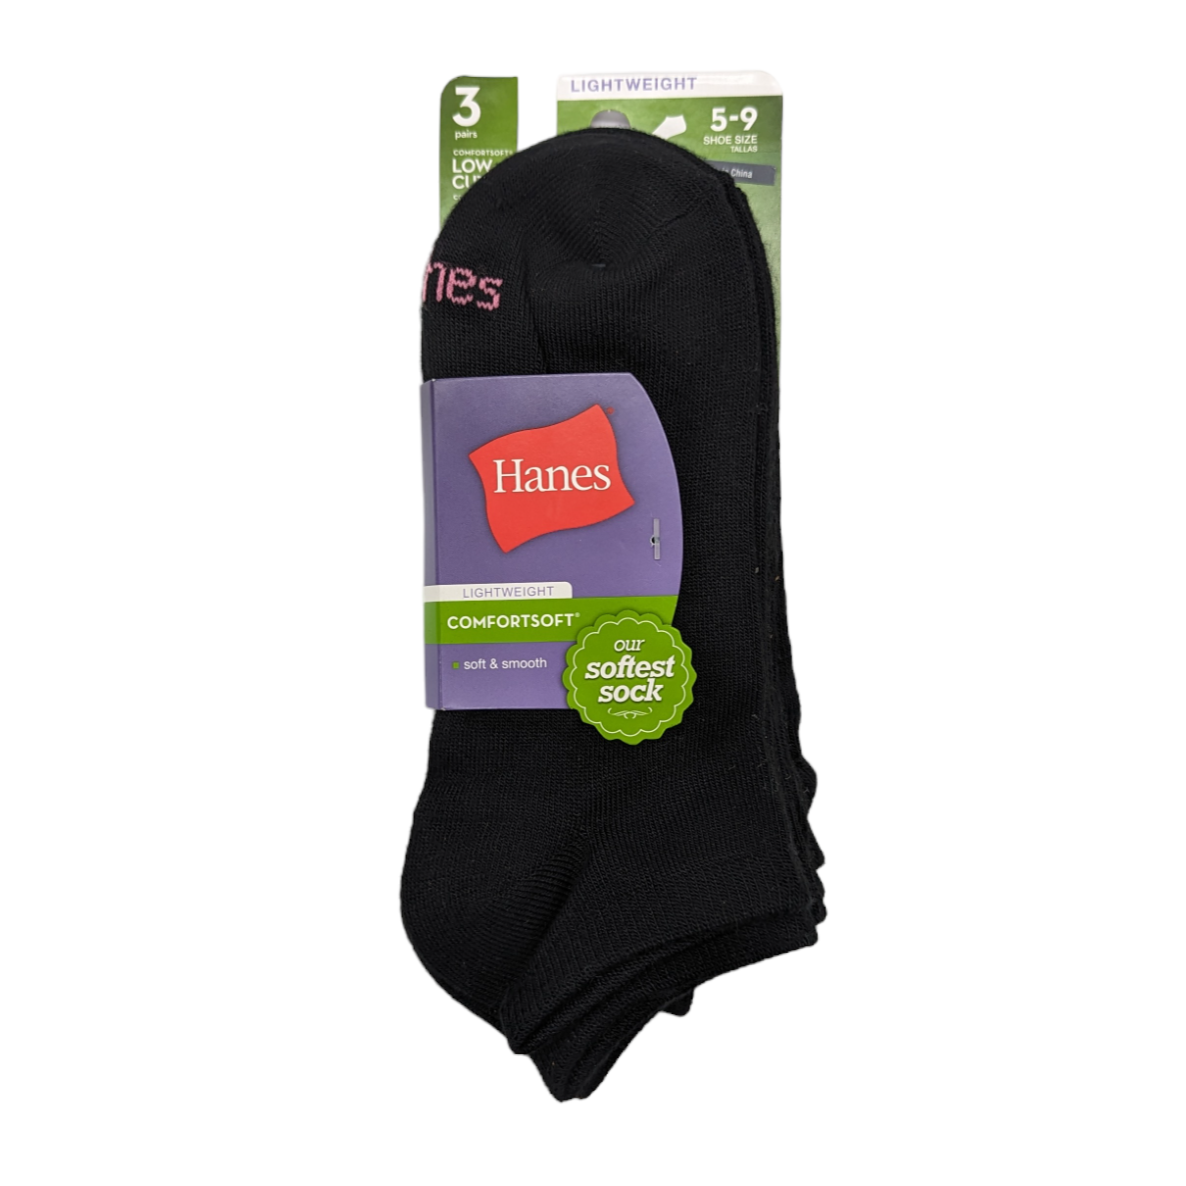 Black low cut socks for women